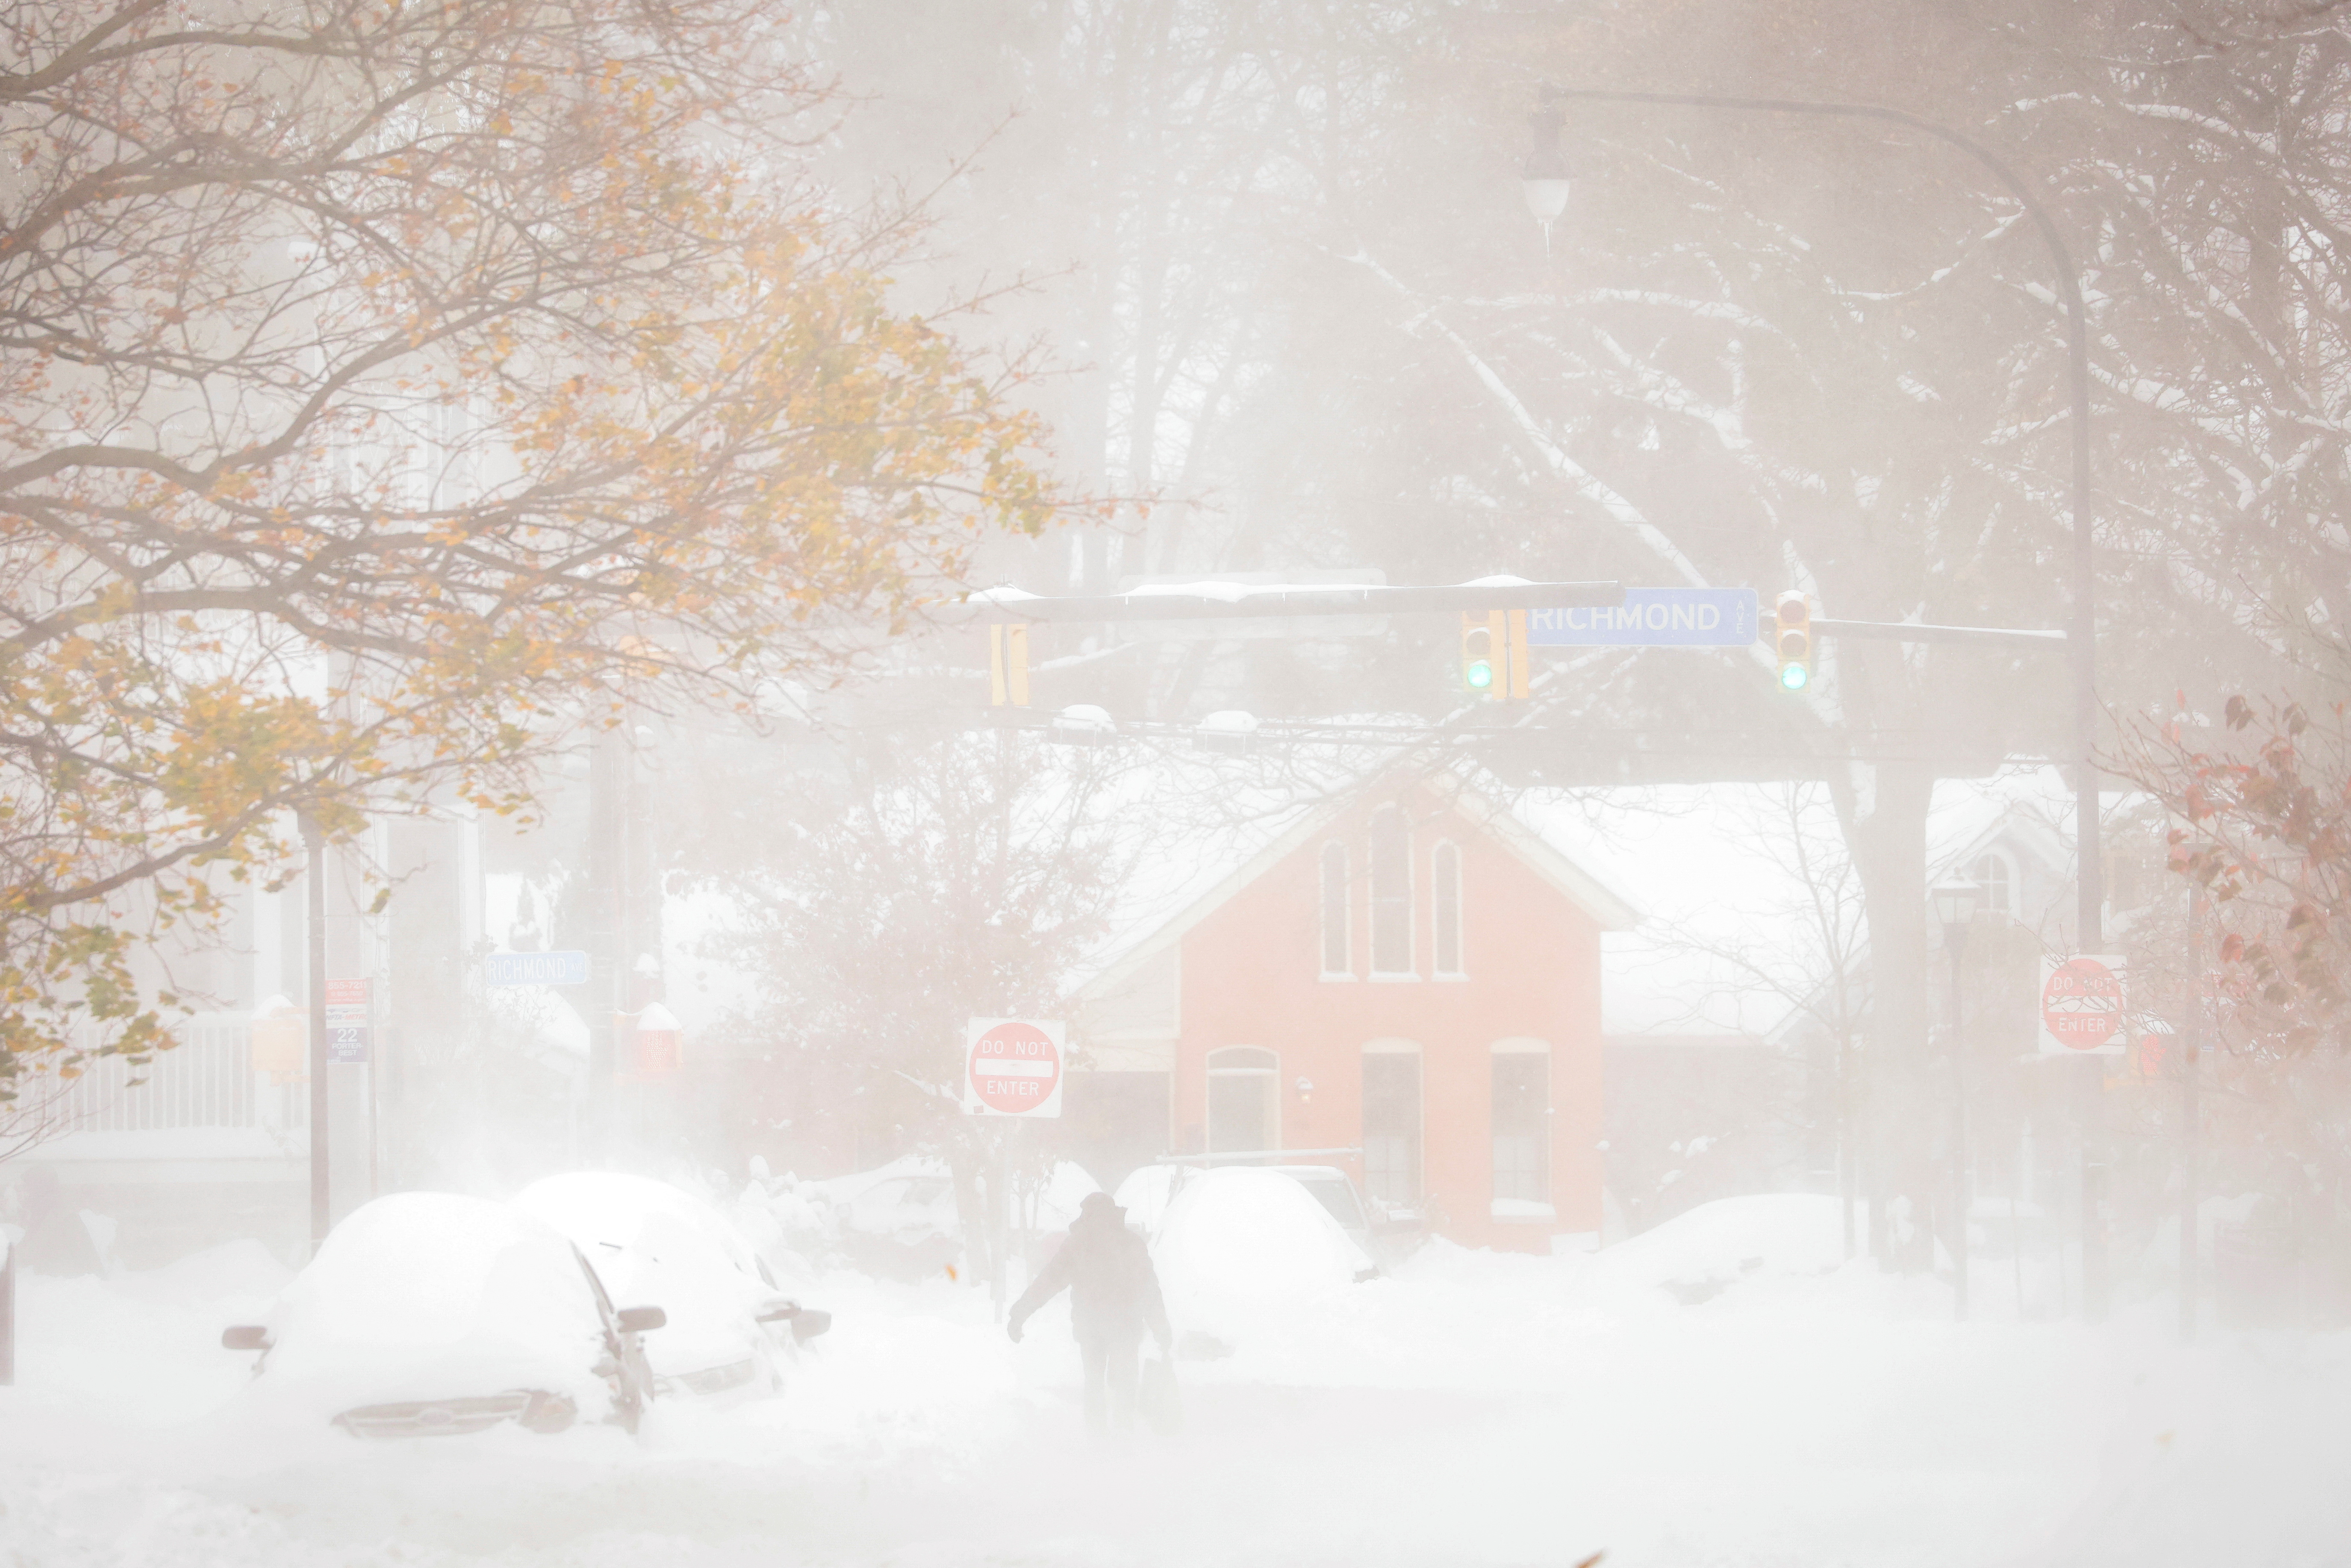 Alcune aree di Buffalo sono state colpite da forti nevicate e forti venti dal lago Erie, mentre altre parti hanno avuto solo poca neve.